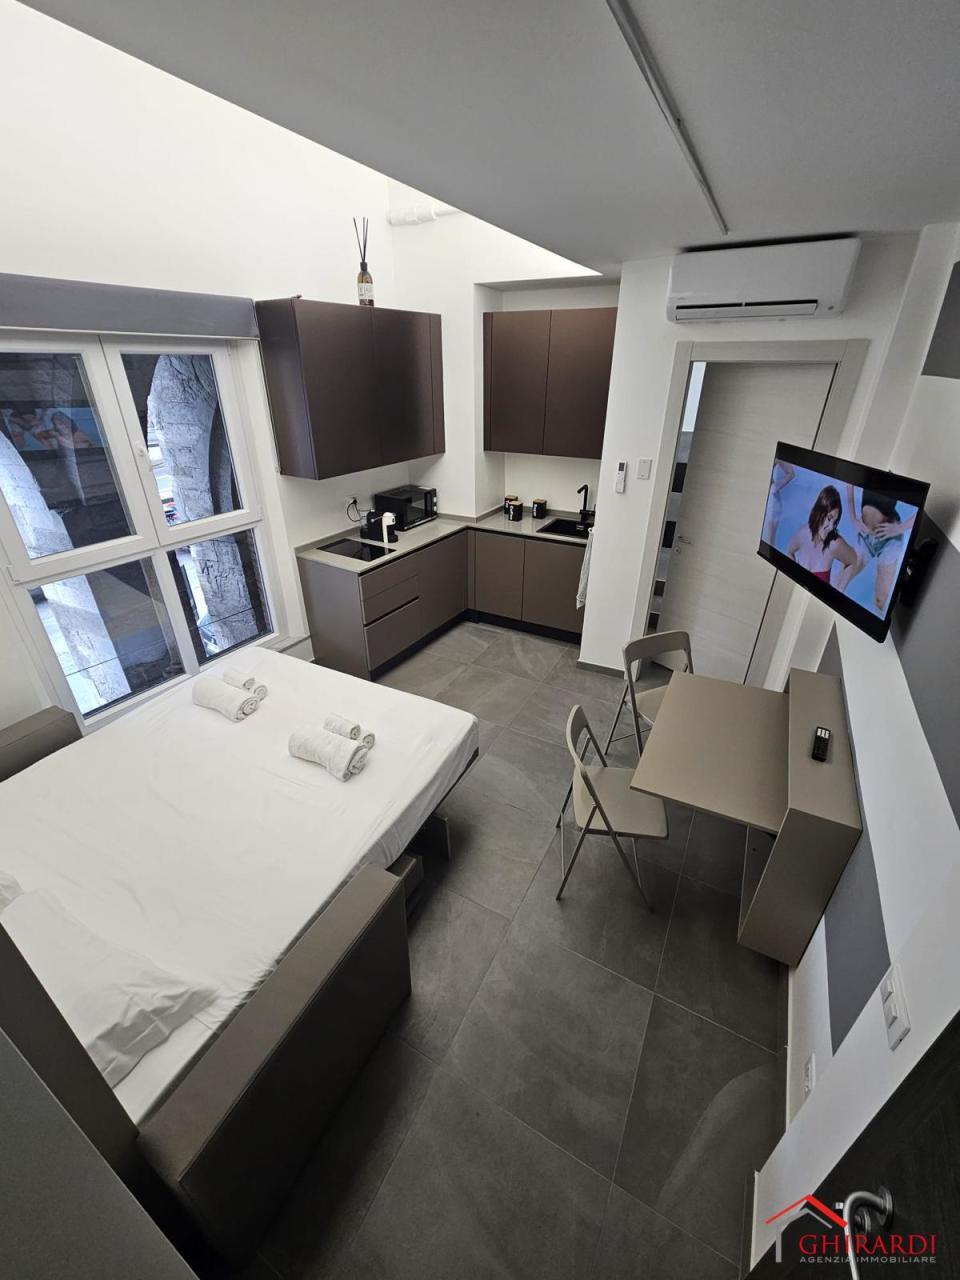 Appartamento in affitto a Genova, 2 locali, prezzo € 1.500 | PortaleAgenzieImmobiliari.it